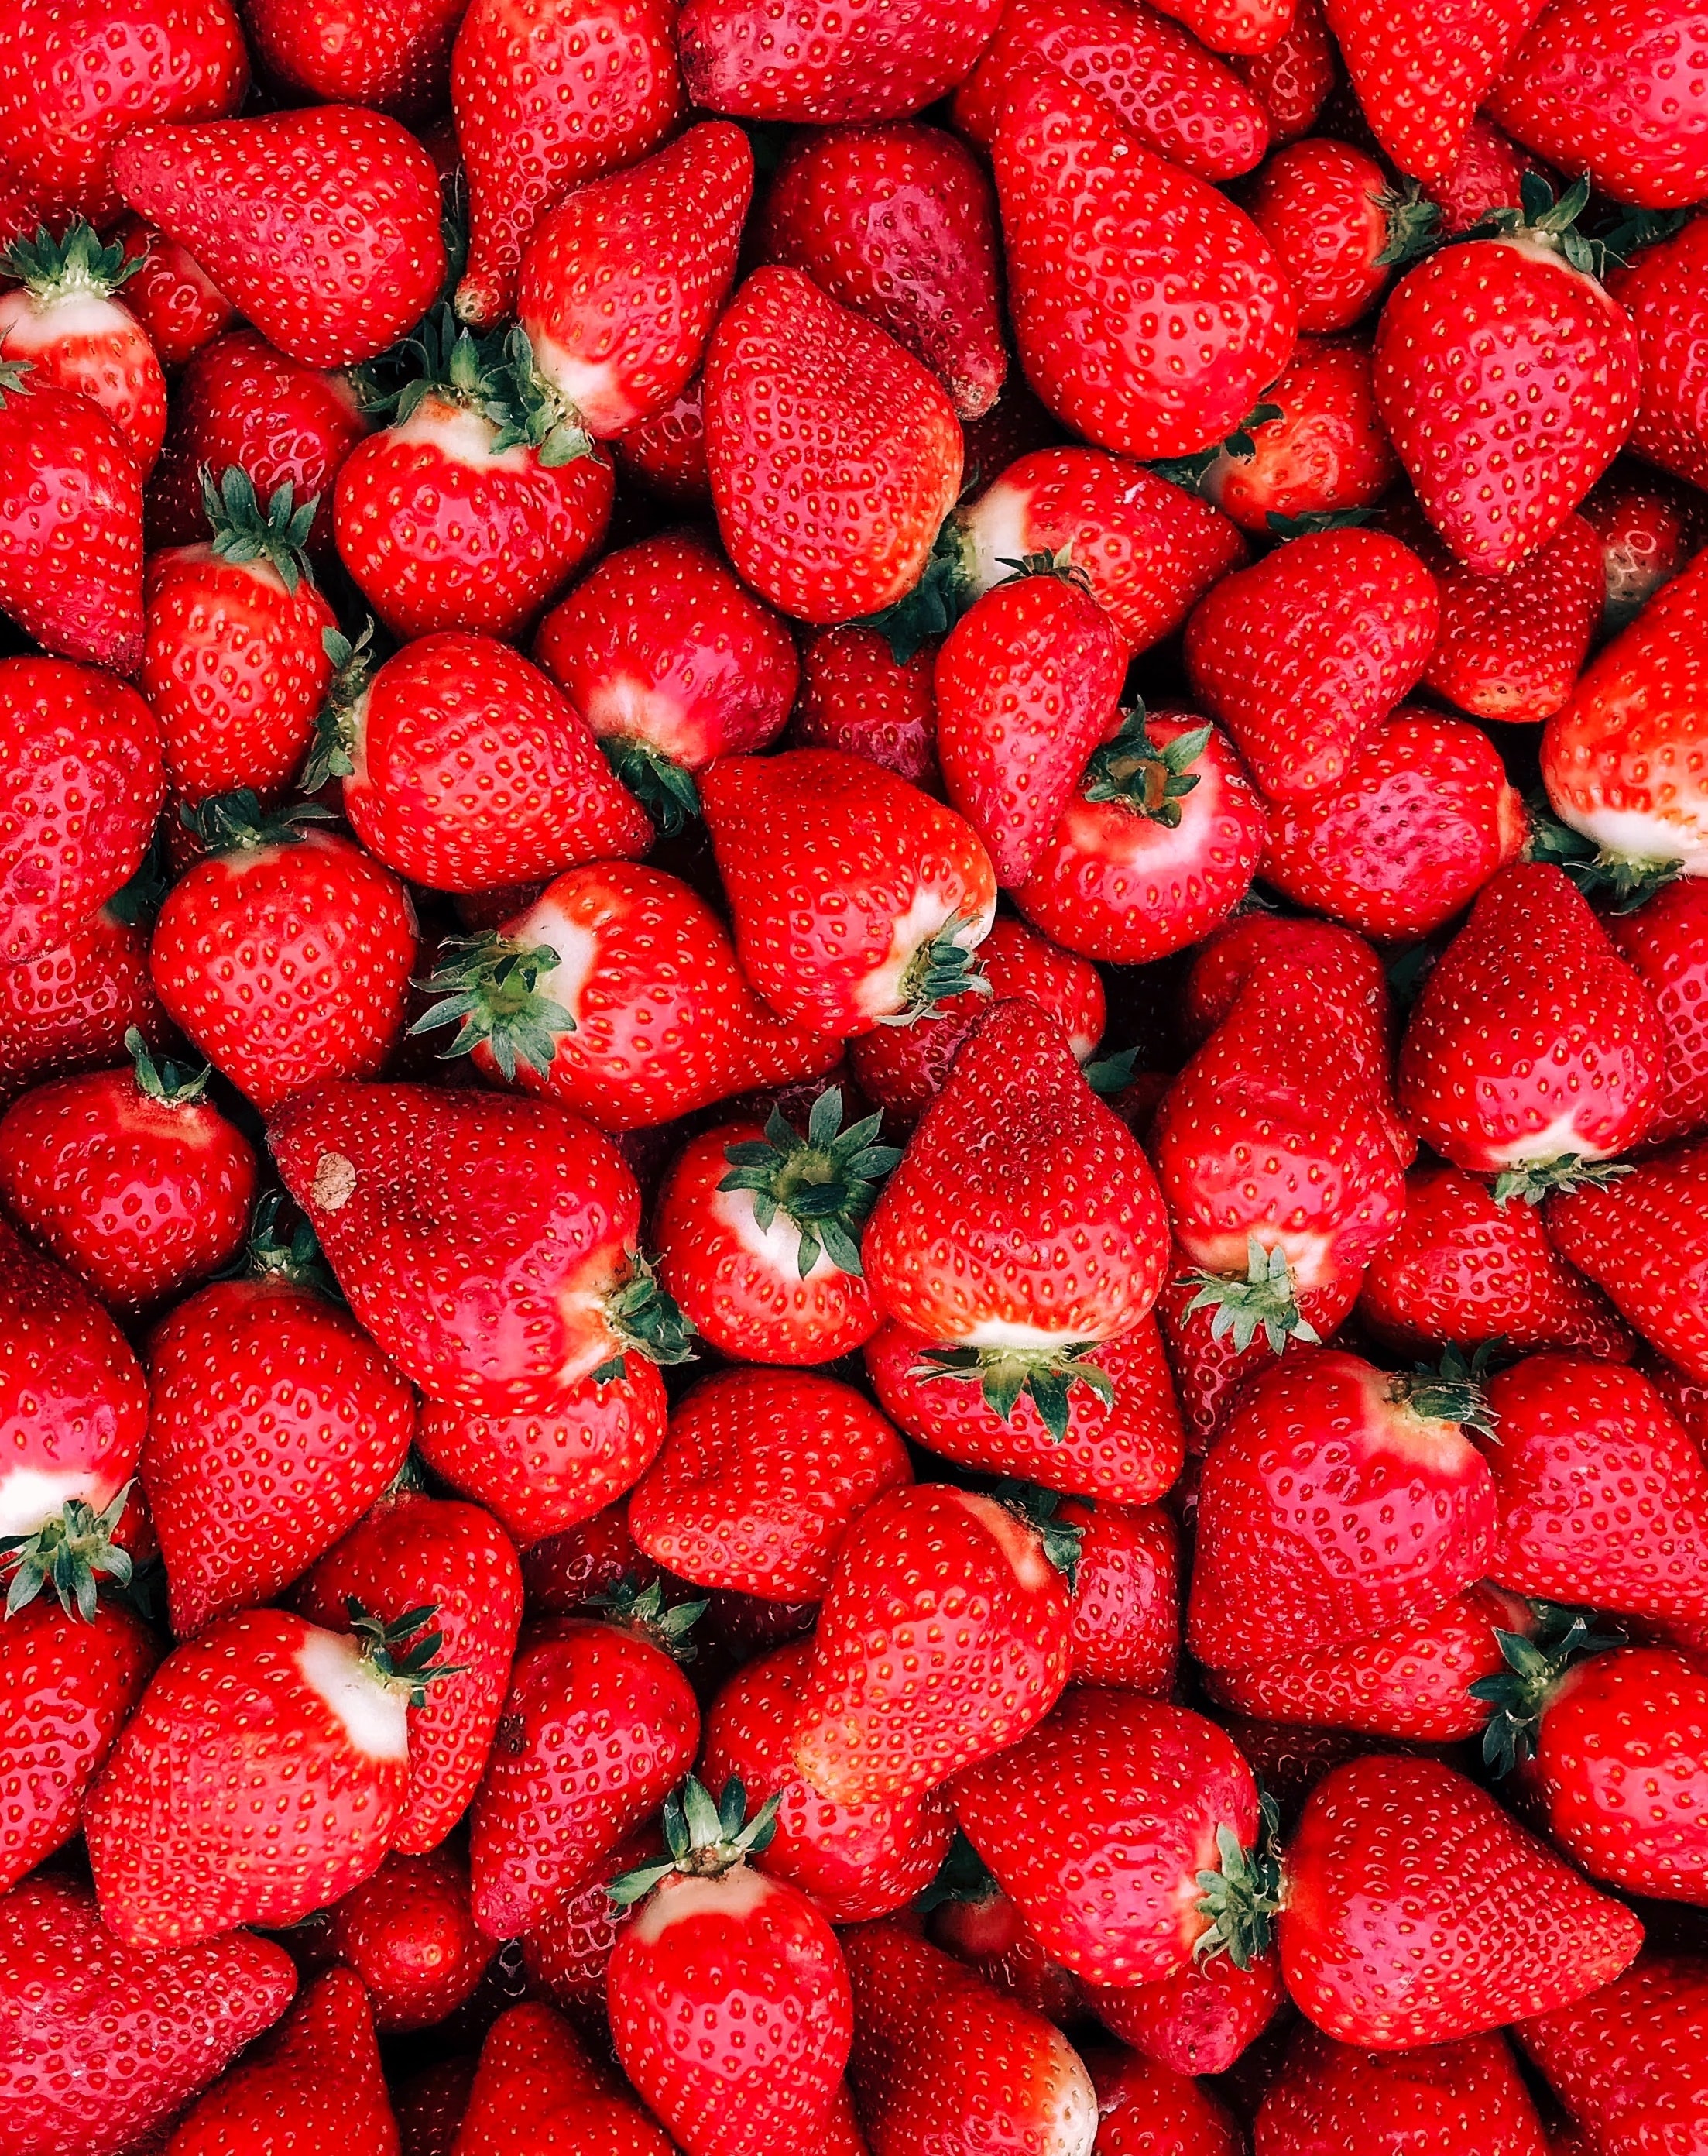 딸기 영양 성분 및 효능 3가지 및 부작용